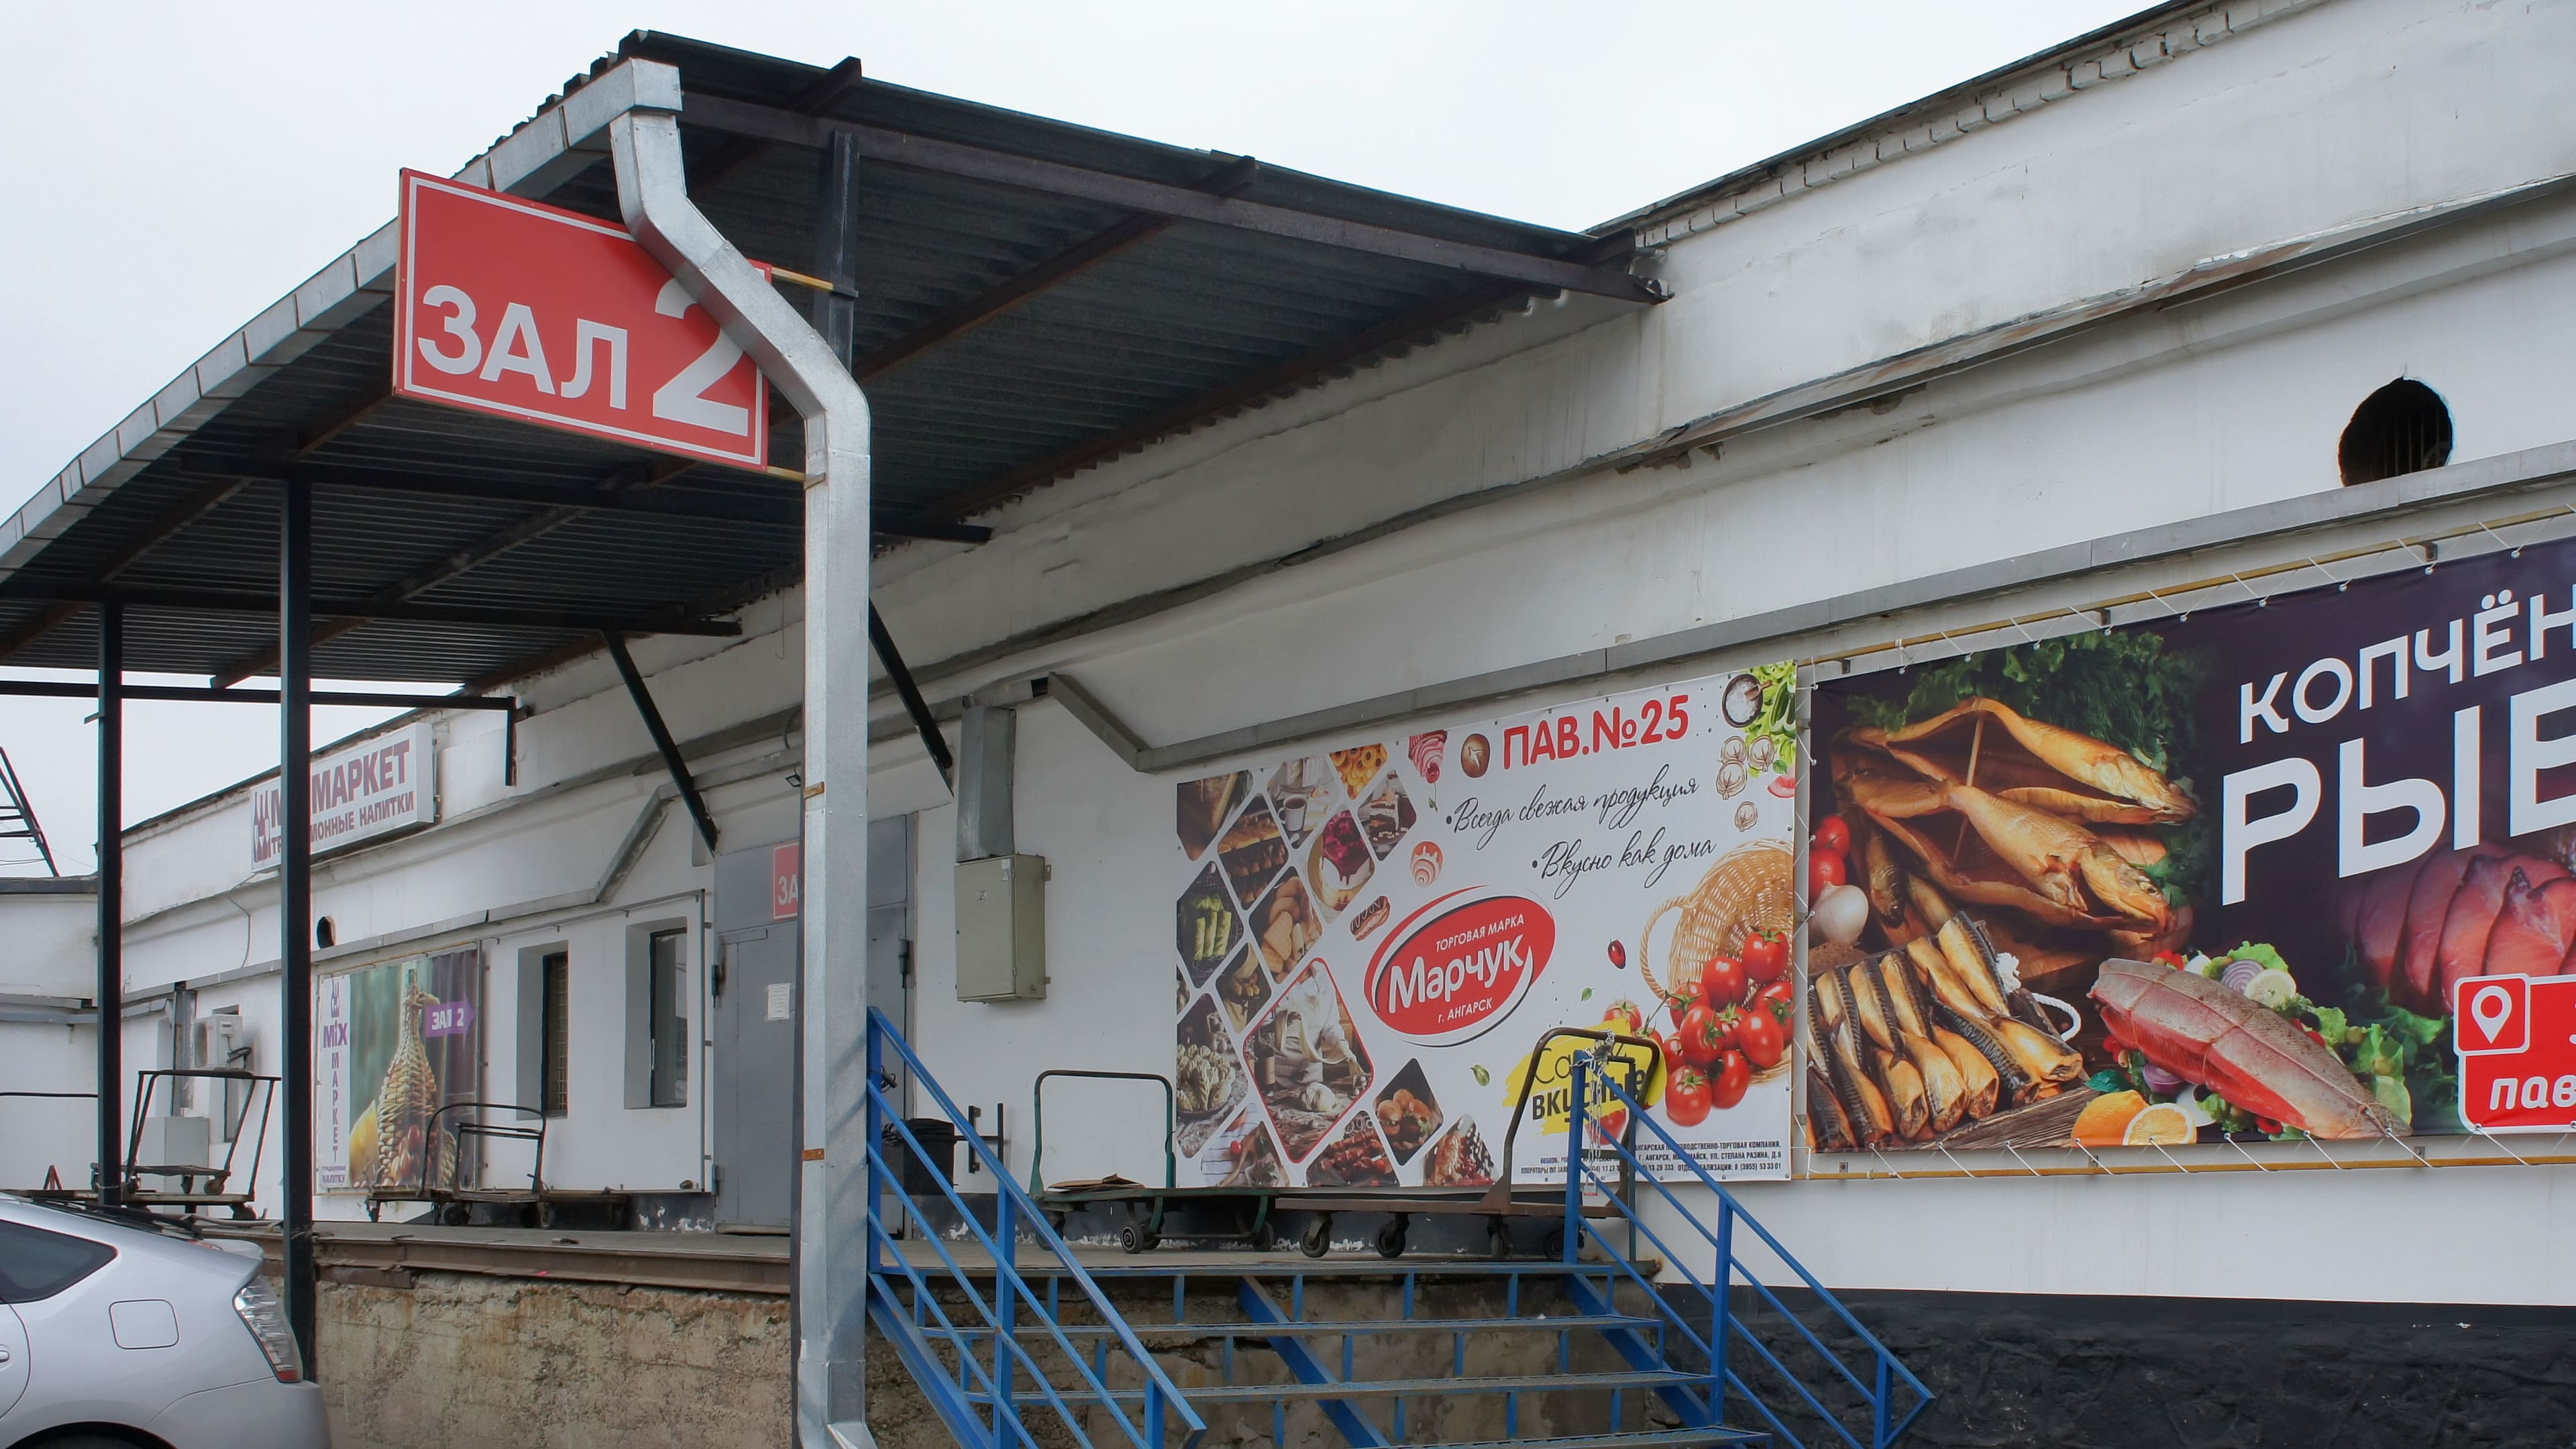 Фирменный павильон «Марчук» на рынке «Торгсервис» в Ангарске - мясные полуфабрикаты, печенье, хлебобулочные и кондитерские изделия.